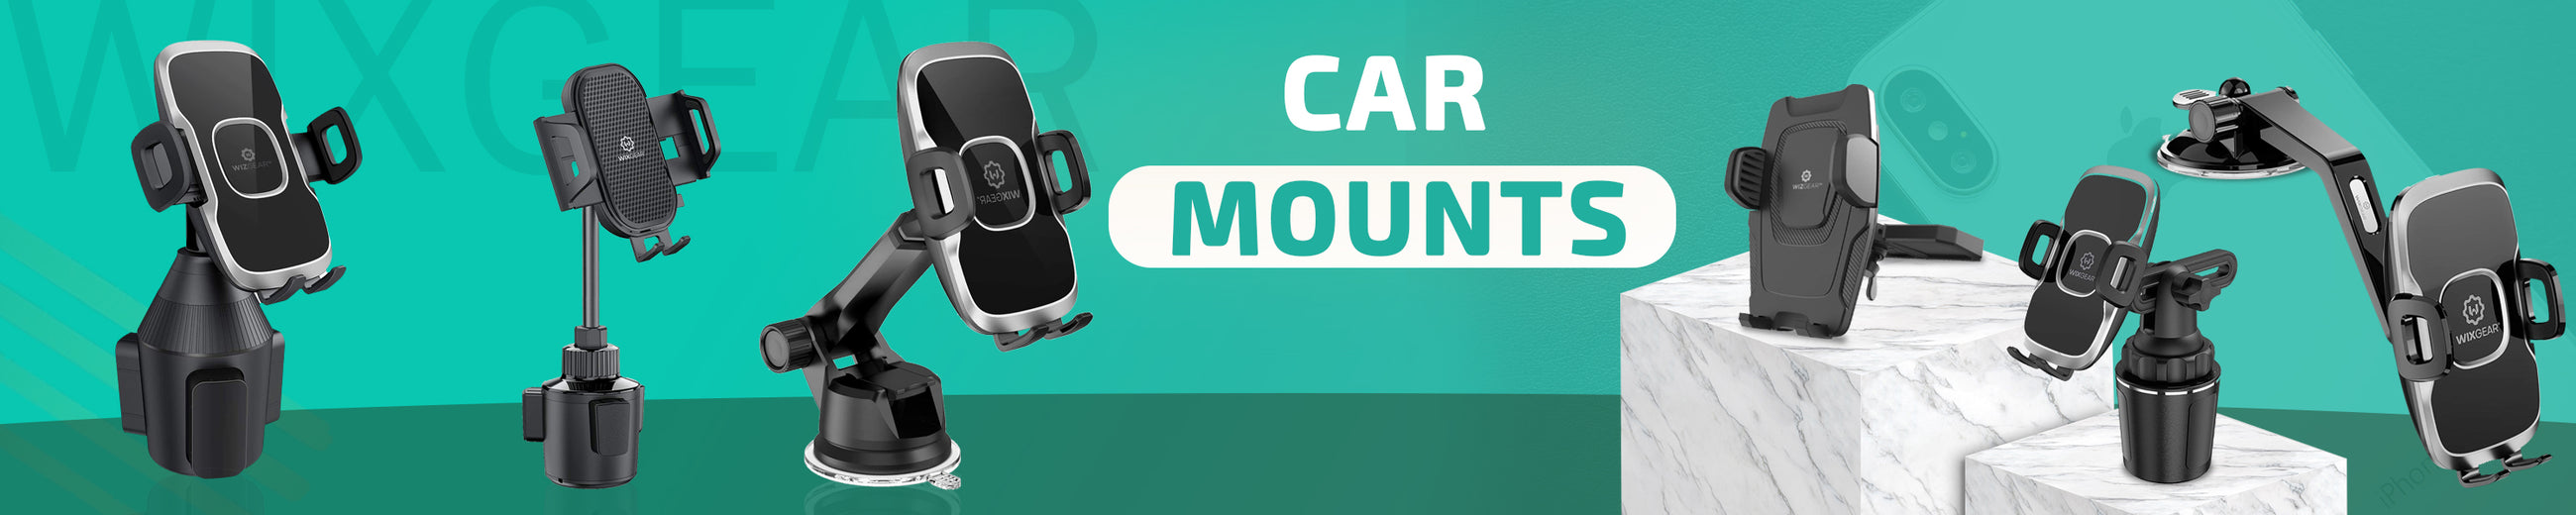 Car Mounts